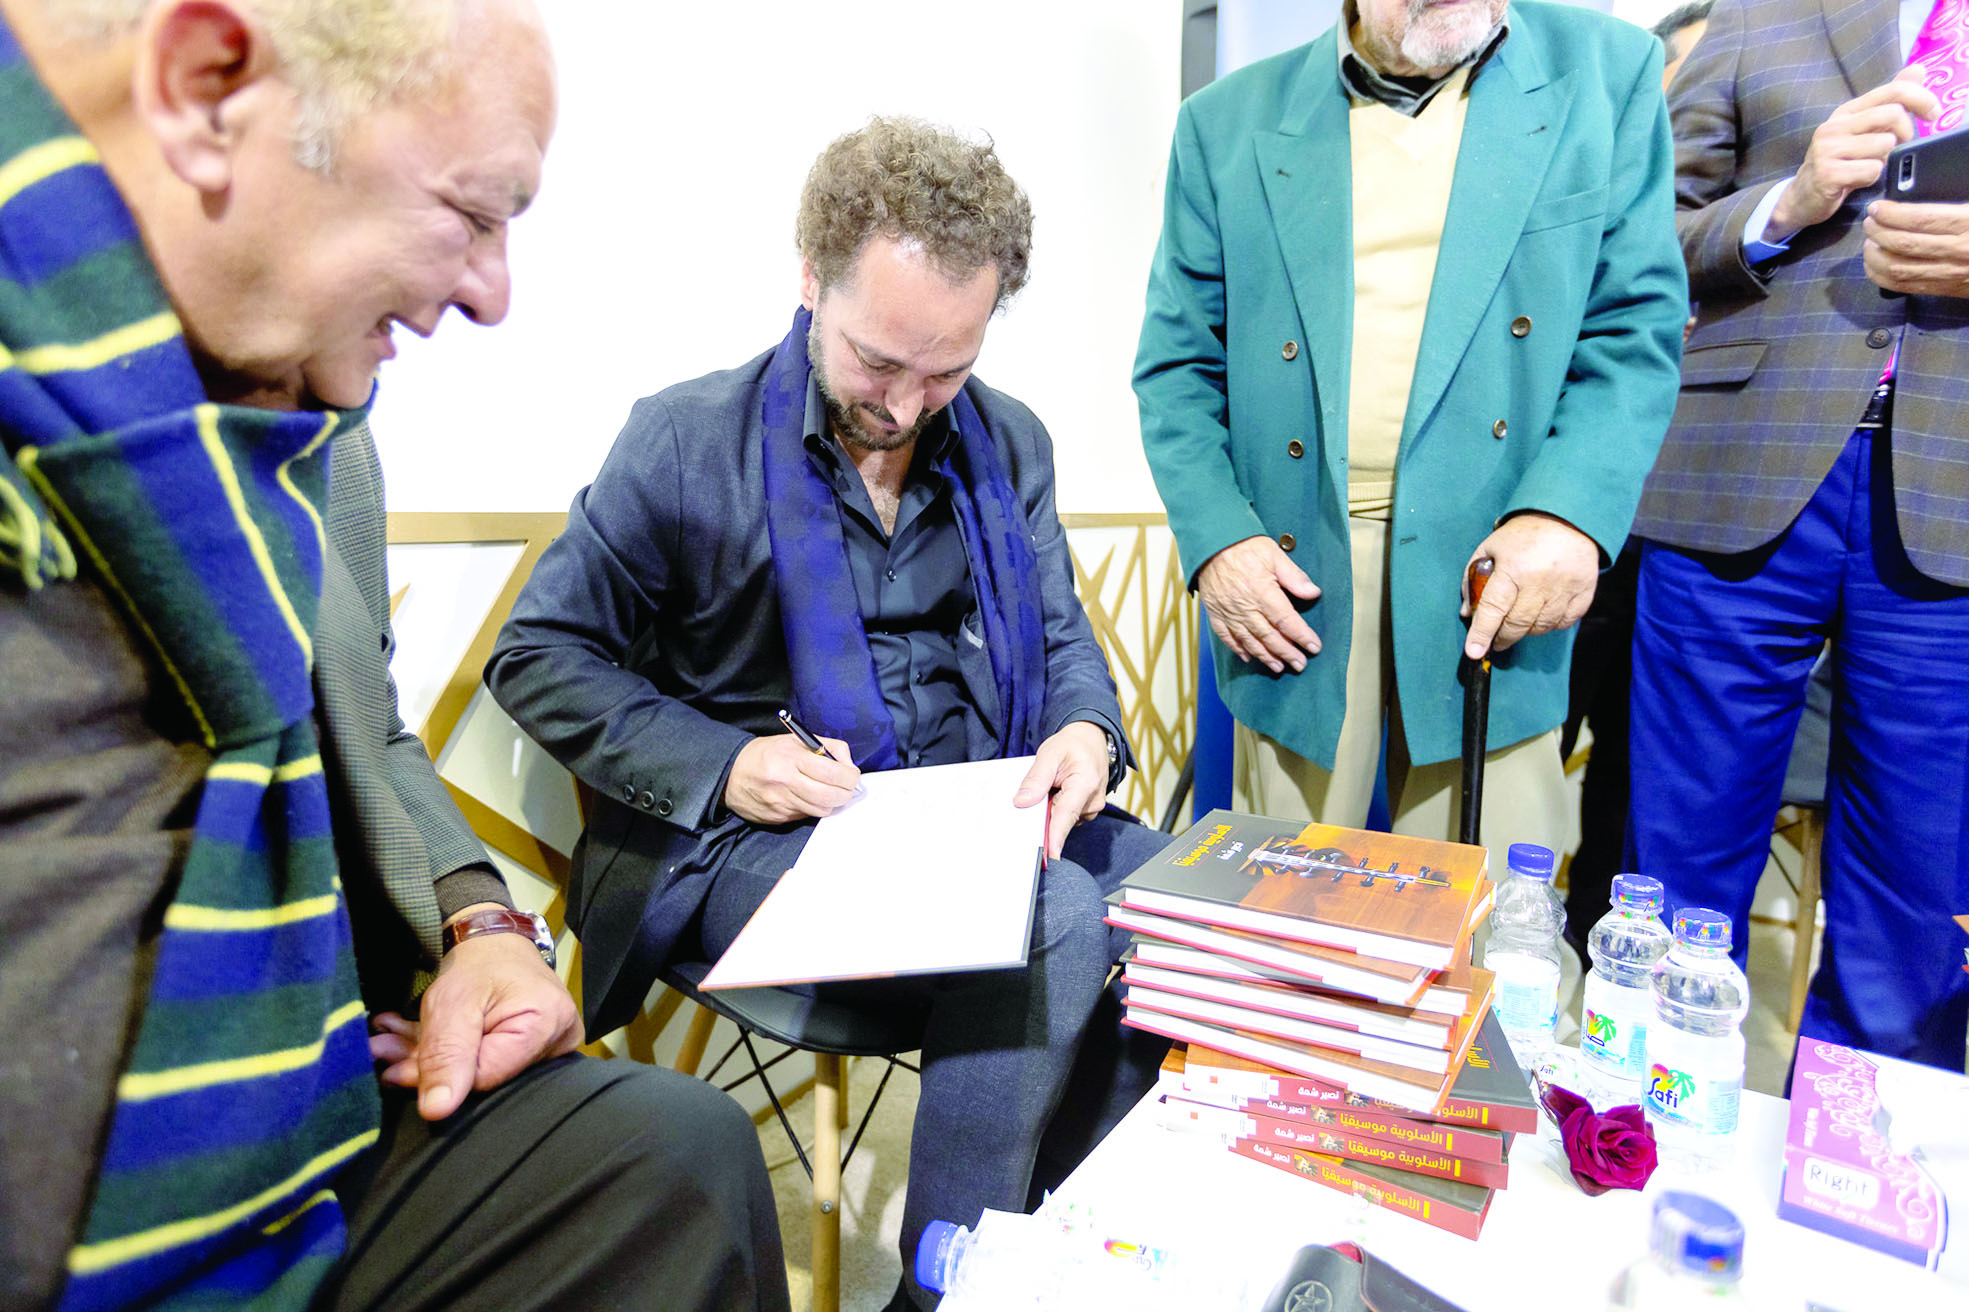 حفل توقيع كتاب "الأسلوبية موسيقياً" لنصير شمه